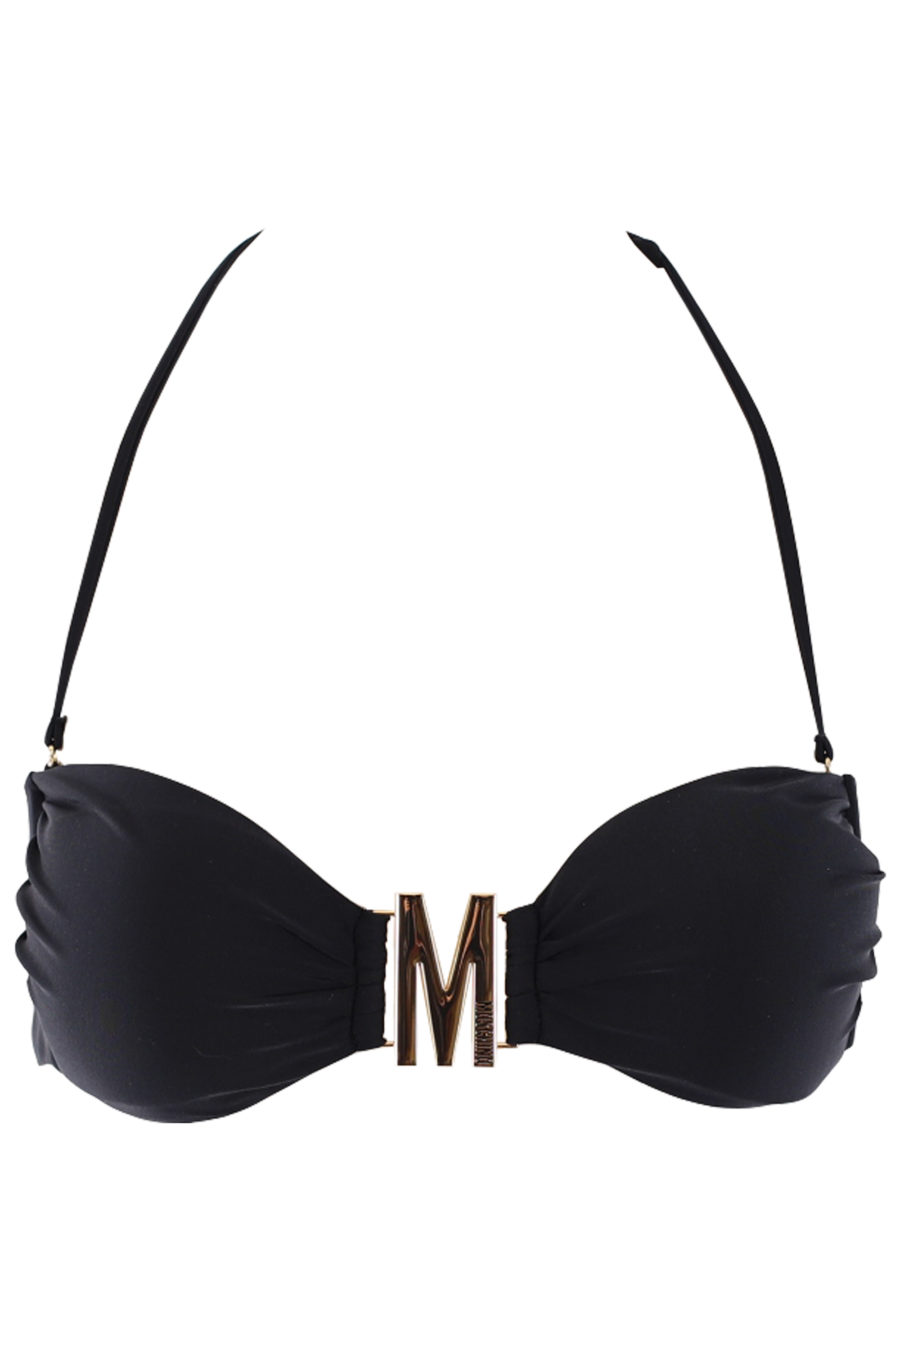 Haut de bikini noir avec logo M doré - IMG 0671